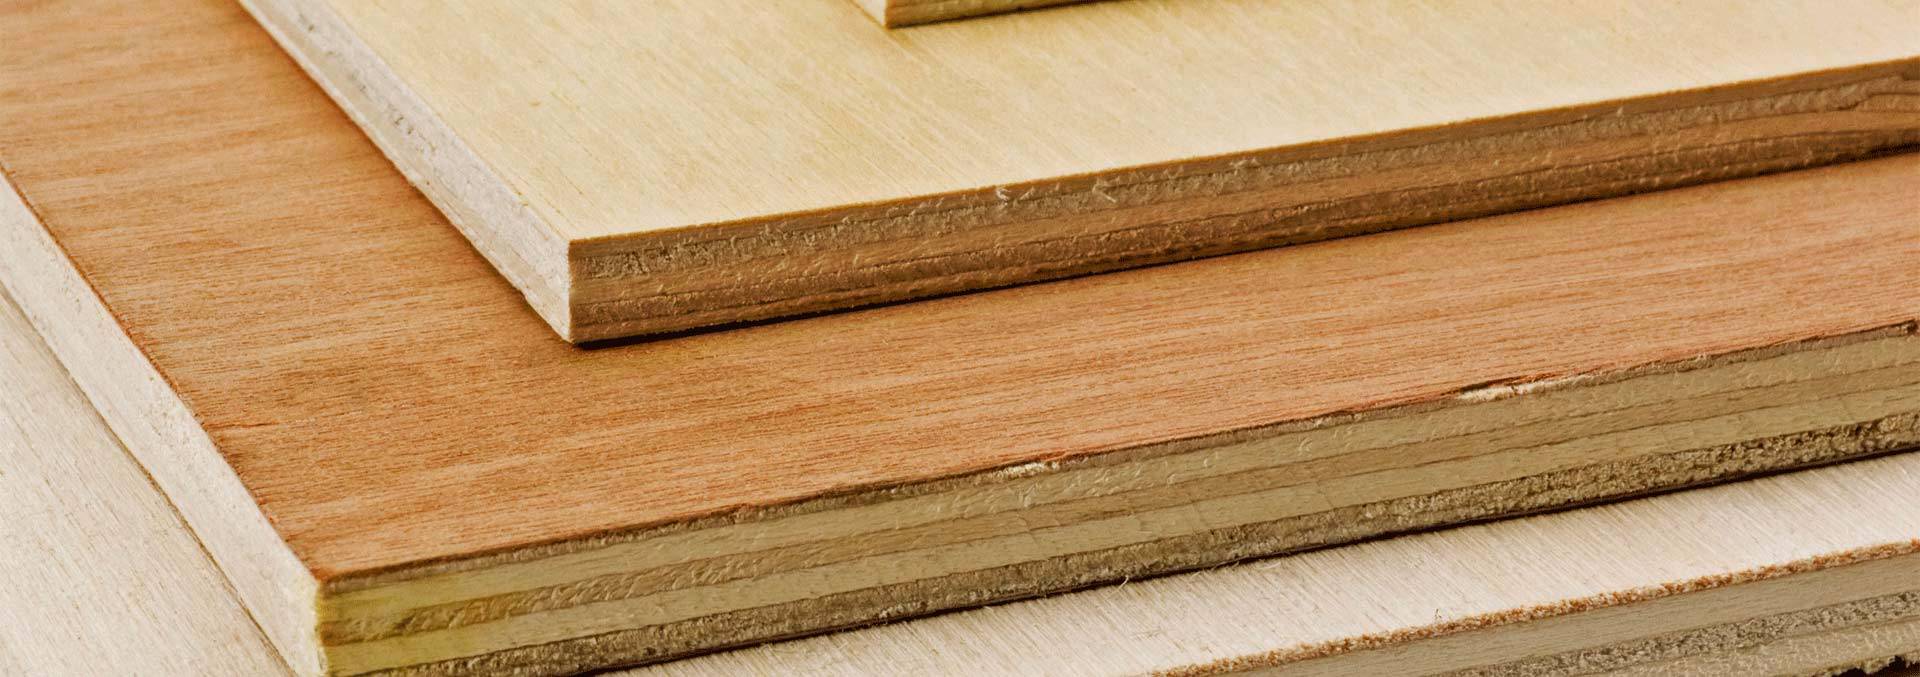 Timber Sheeting